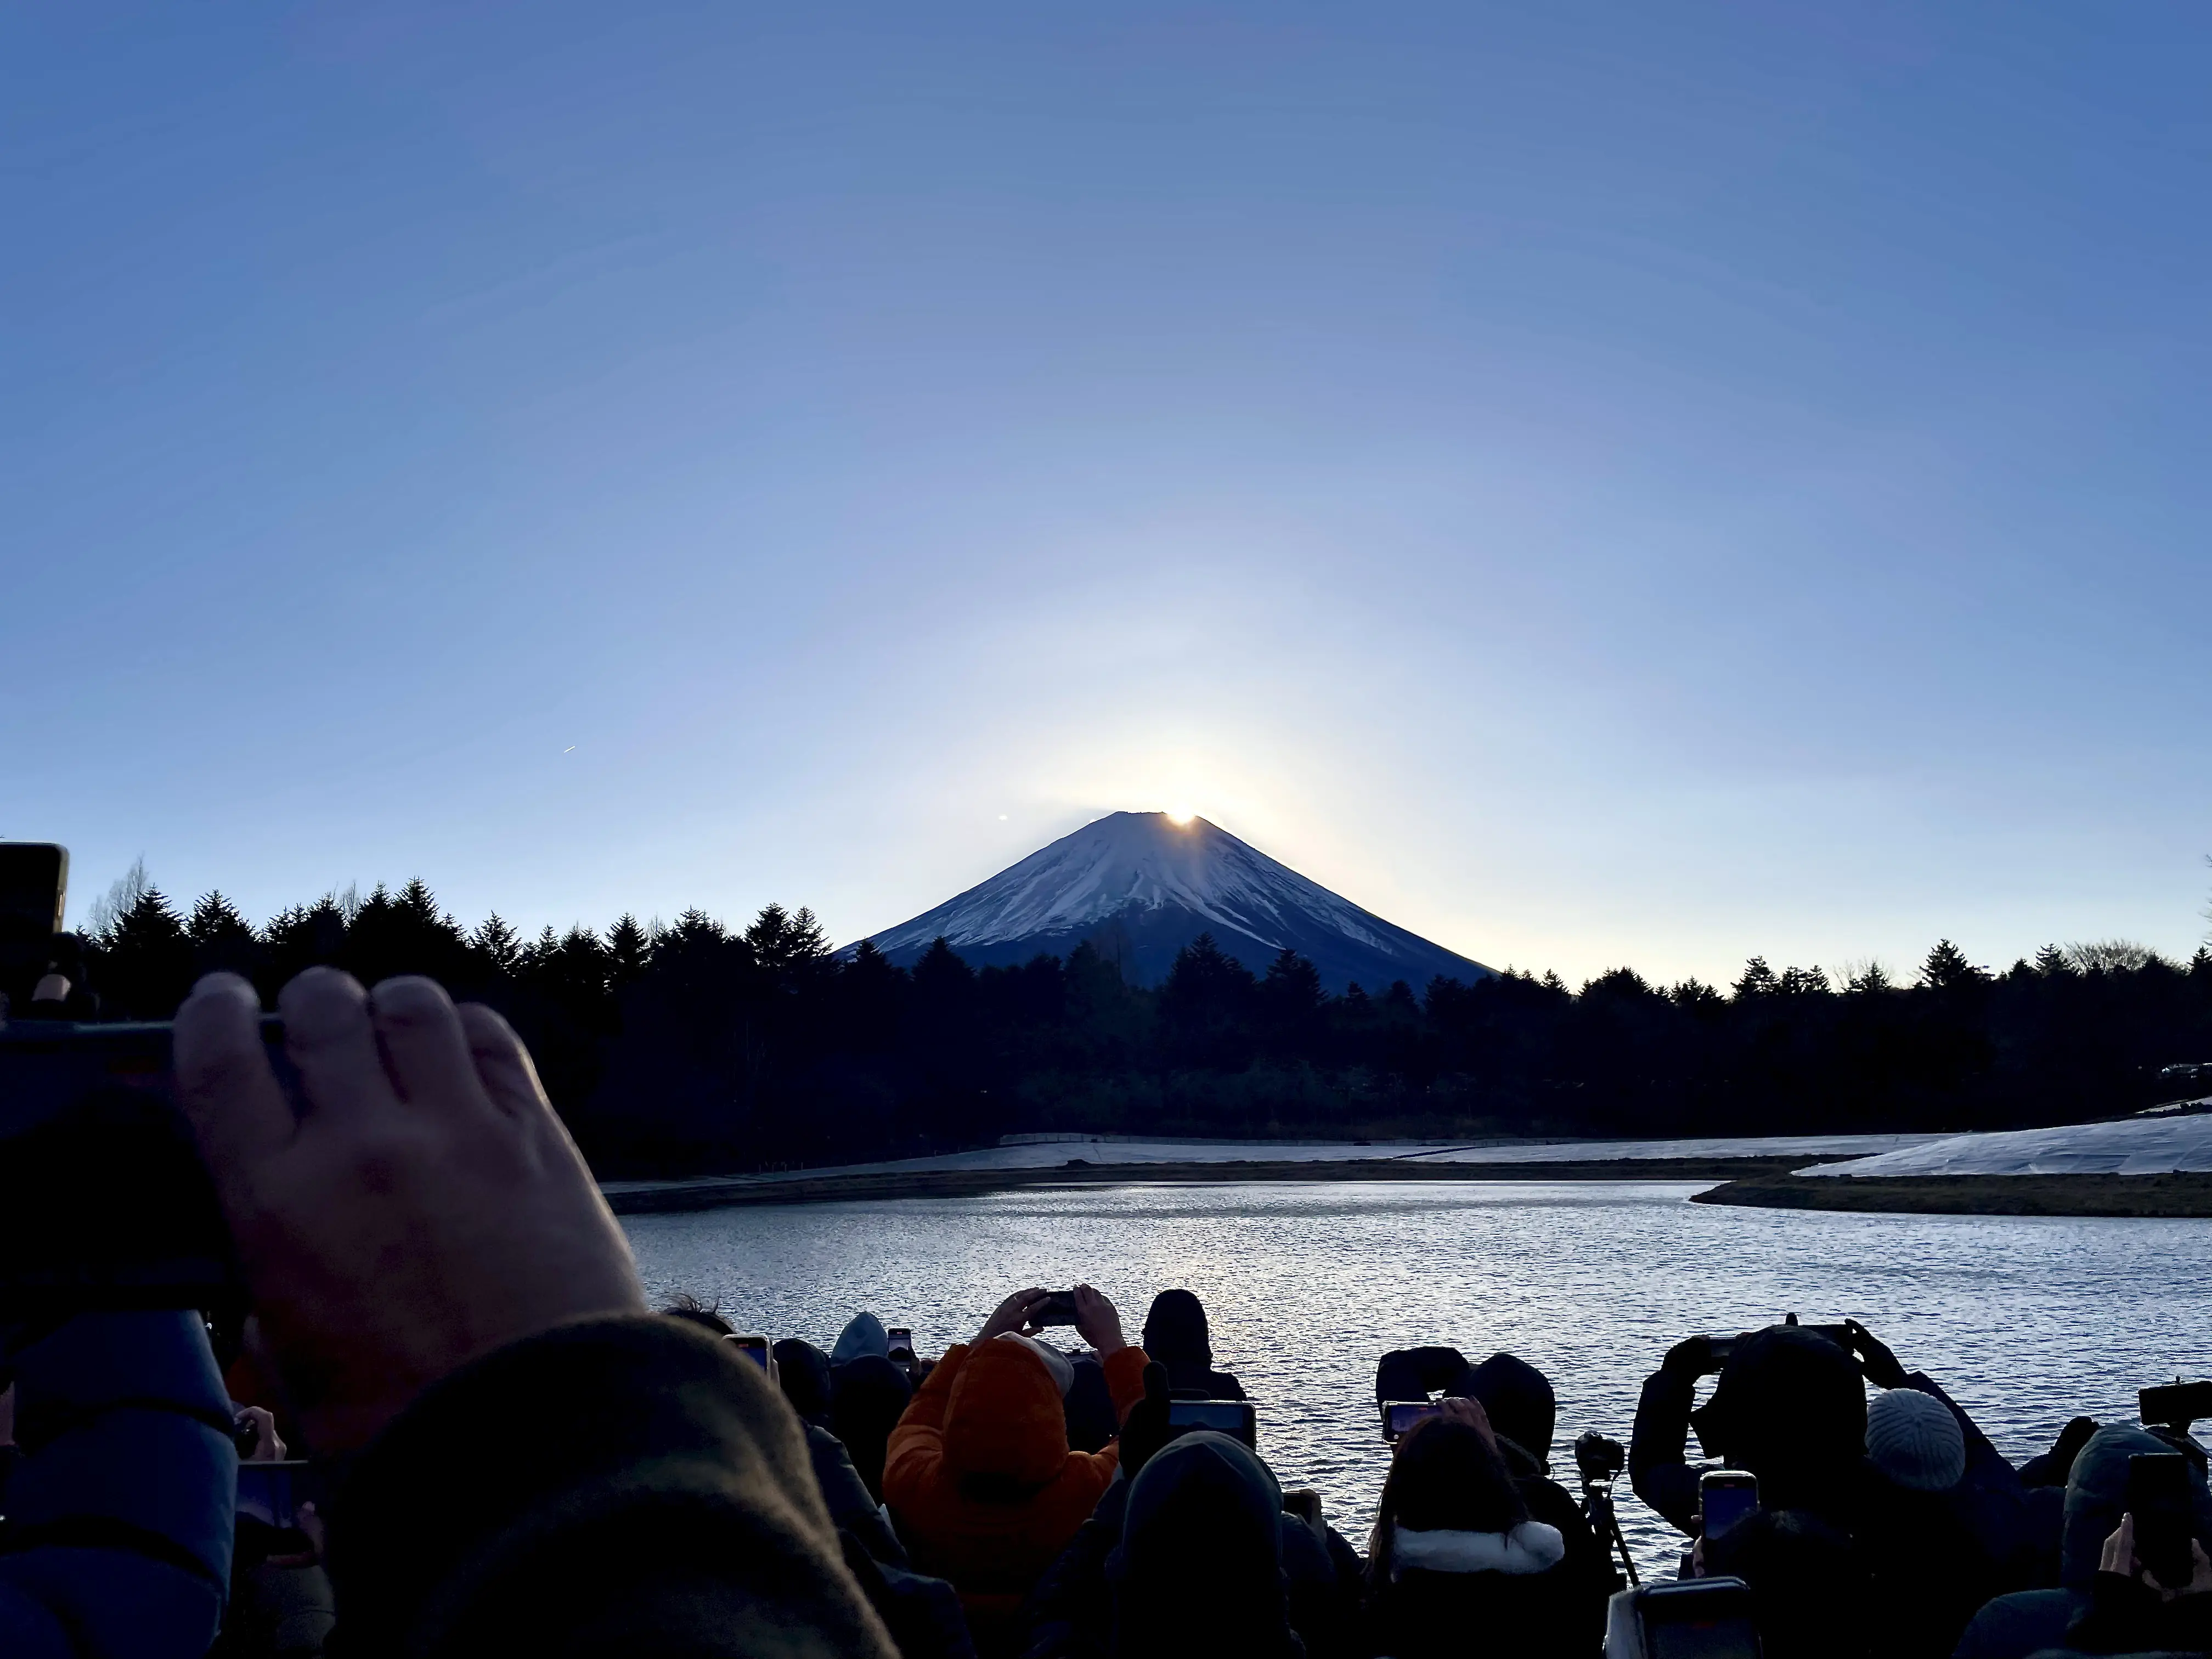 日本人も外国人もみんながみんな、富士山に魅了されているこの雰囲気が面白い。